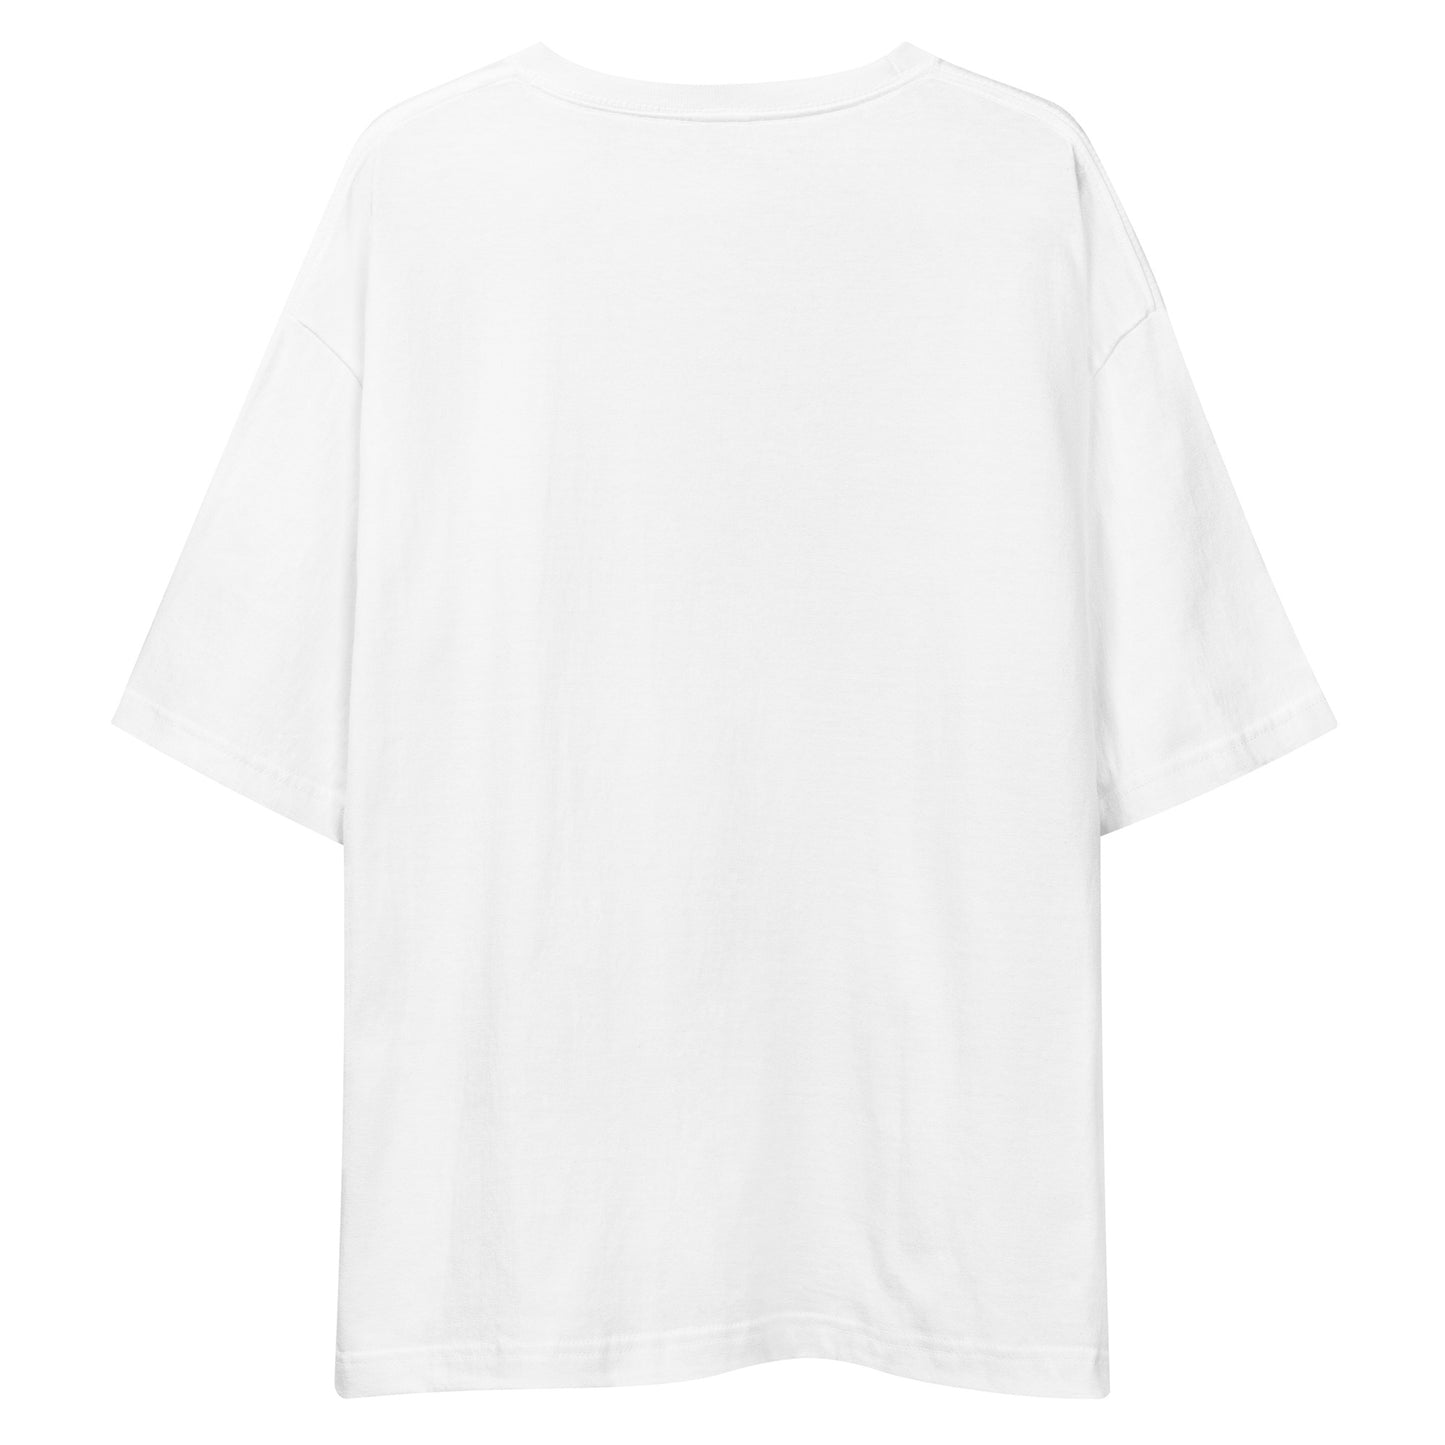 E216 - Tシャツ/ビッグシルエット(ユニバーサルジャンプ : ホワイト/ブラック)